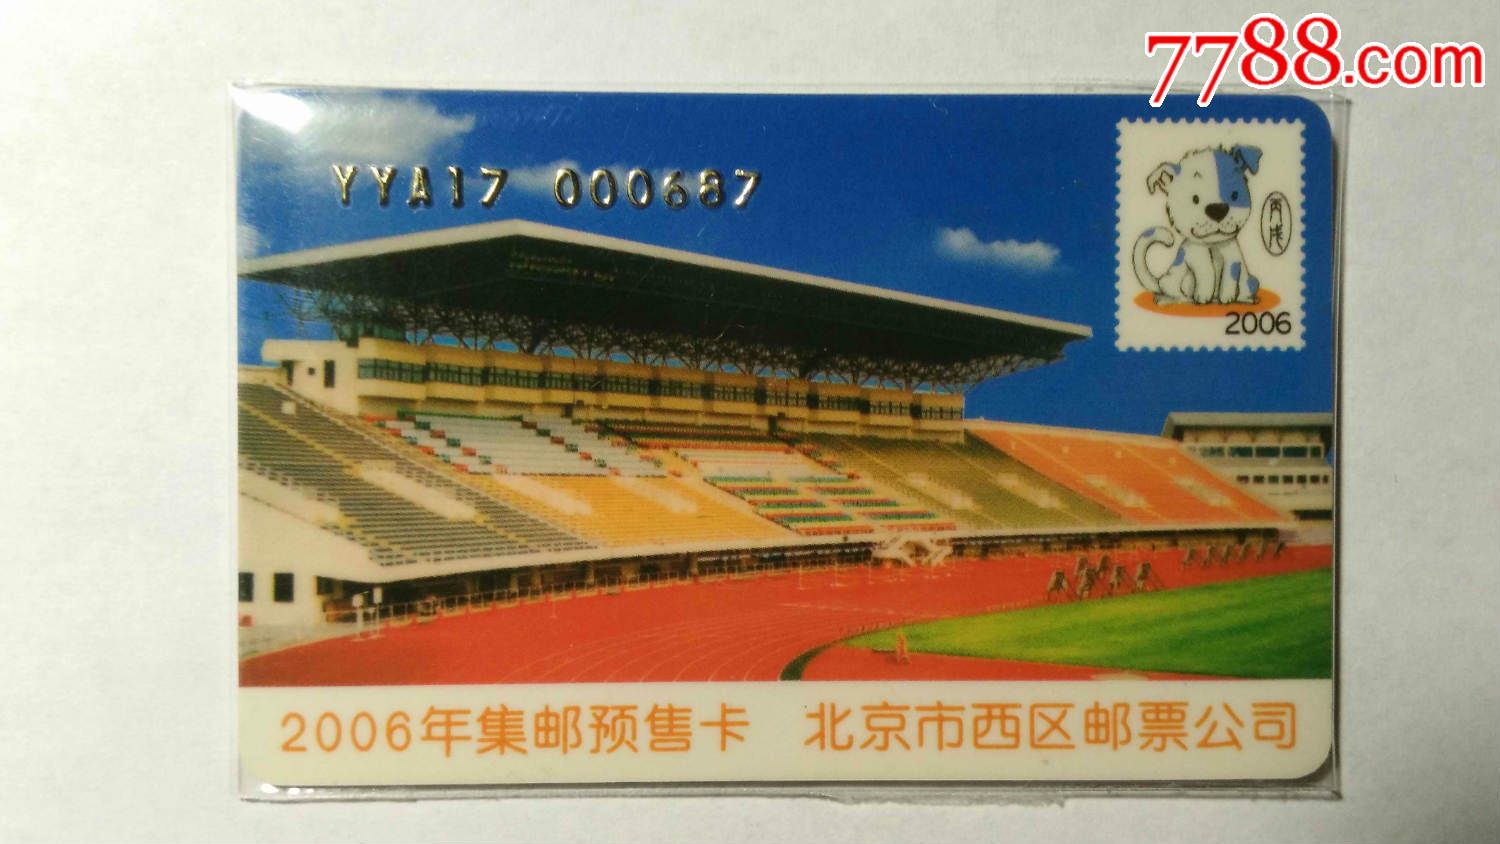 北京市西区邮票公司---2006集邮预售卡-价格:1